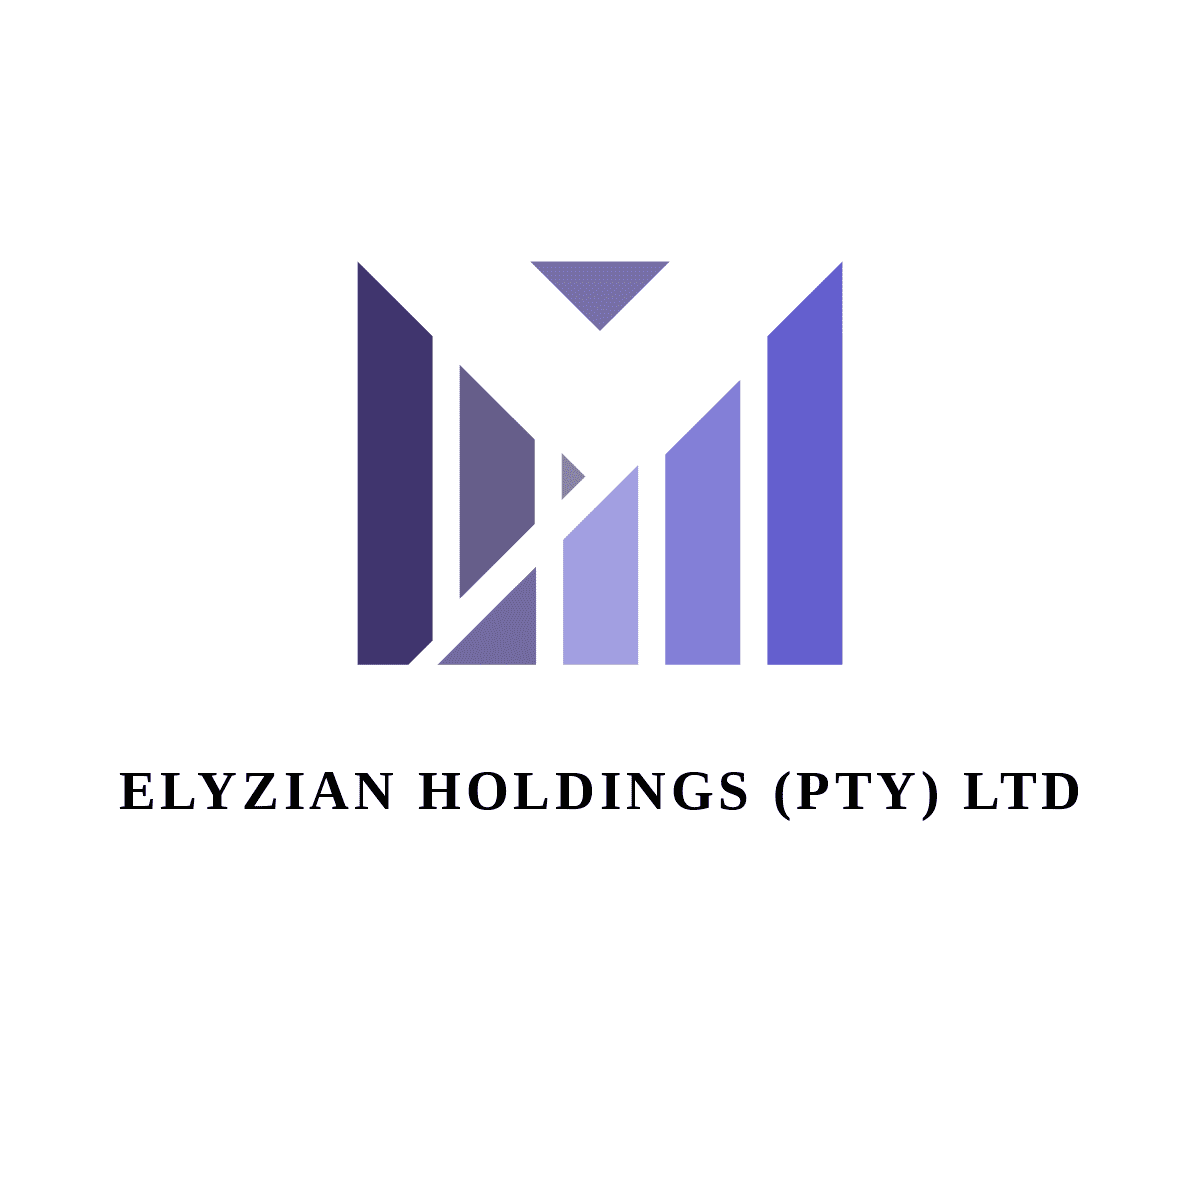 Elyzian Holdings